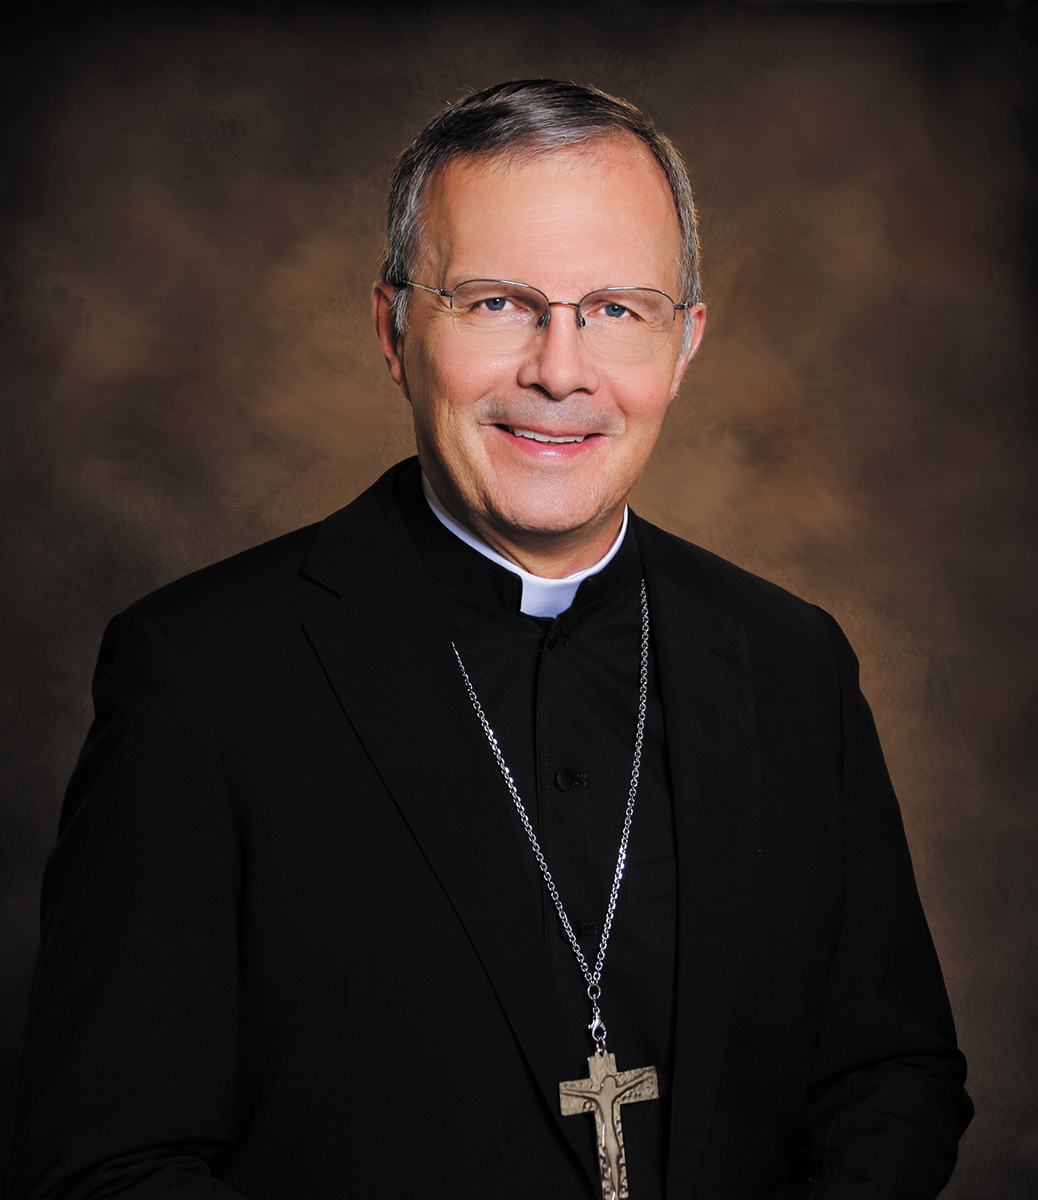 Bishop William Joensen